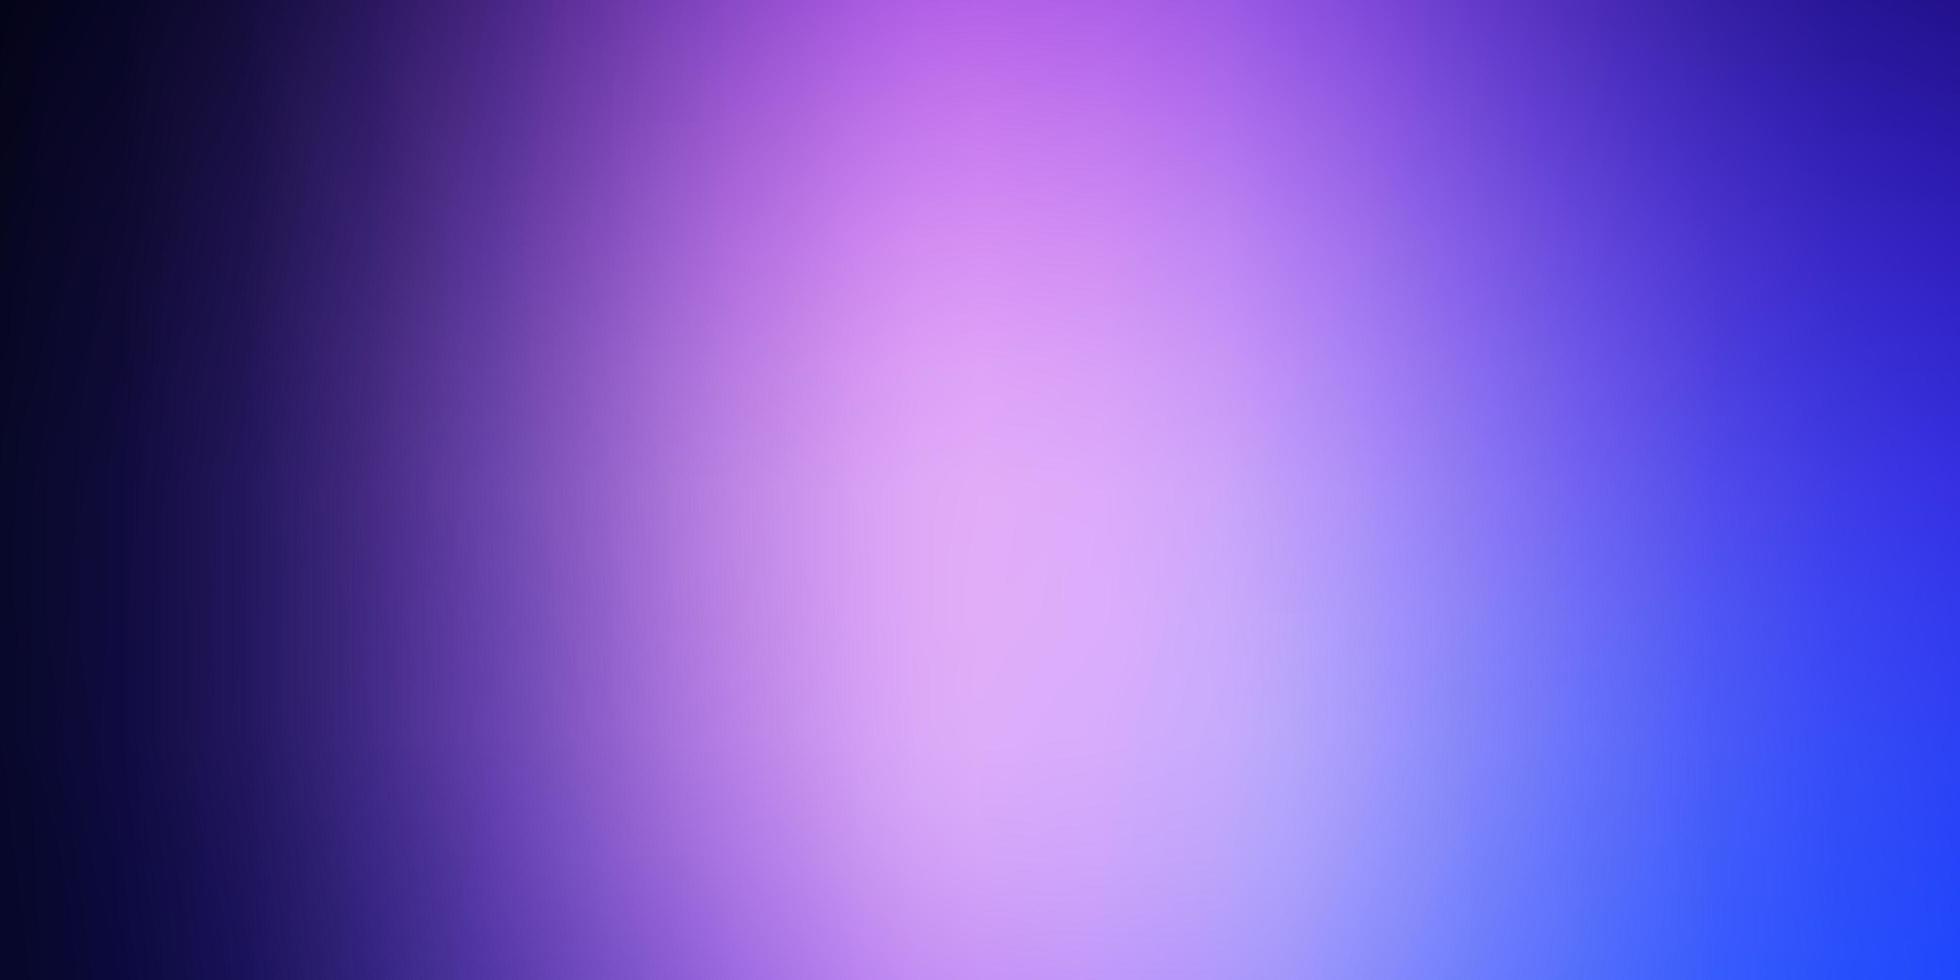 Fondo borroso abstracto del vector púrpura claro. Ilustración abstracta degradada con colores borrosos. nuevo lado para su diseño.